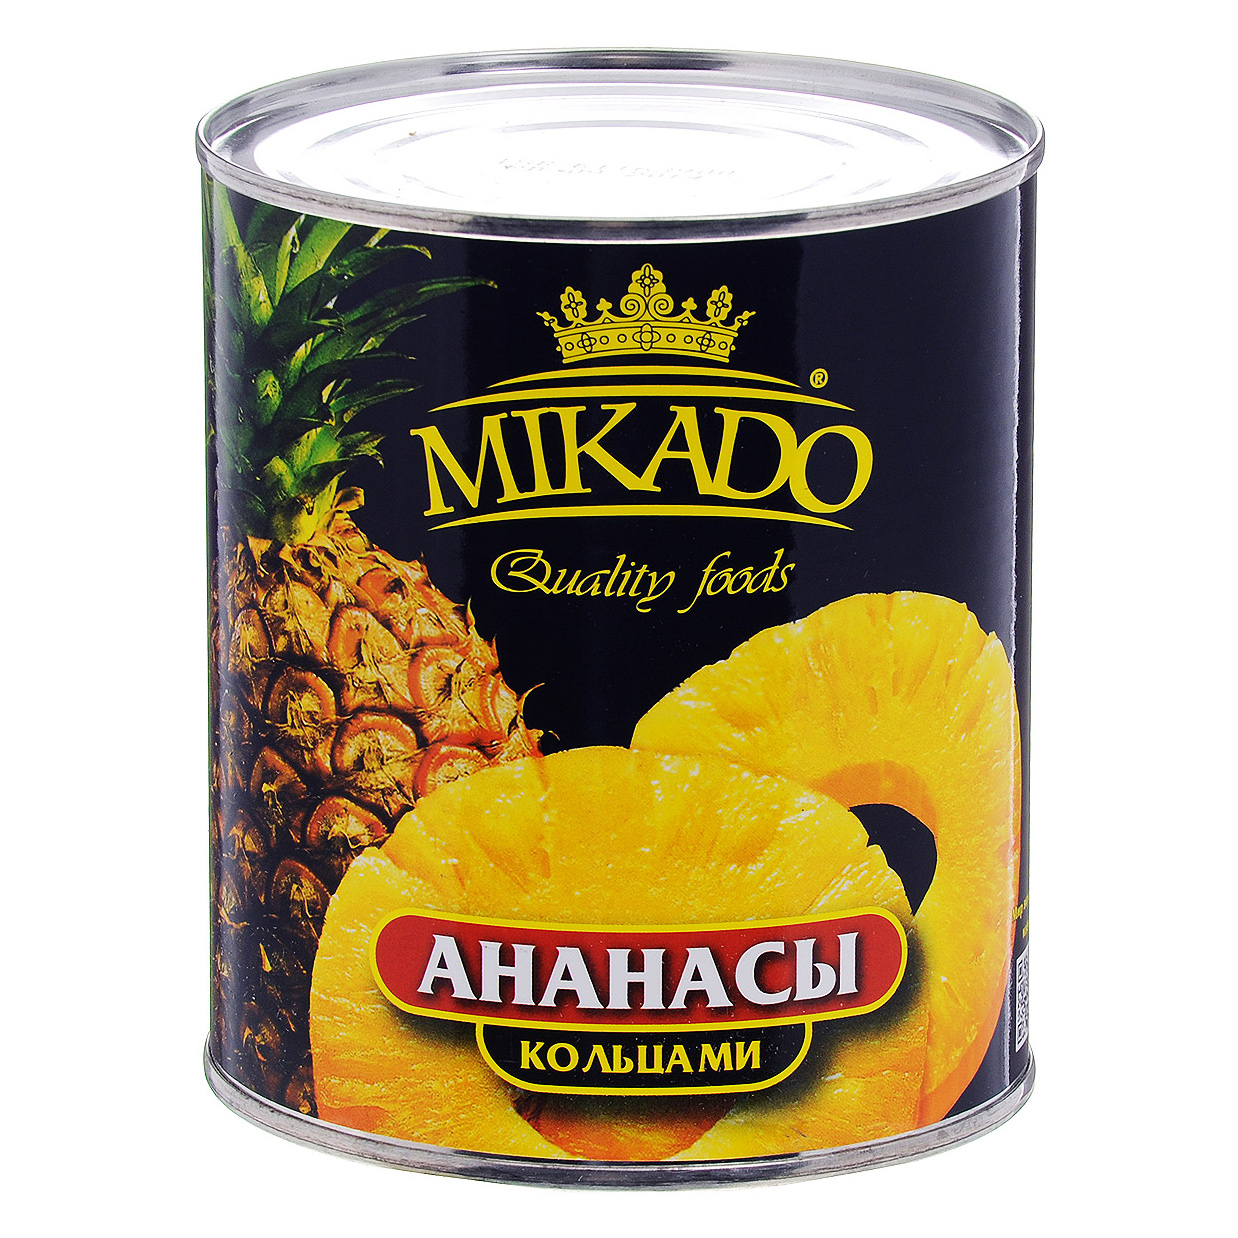 Кольца ананаса Mikado в сиропе 0,825 г кисломолочный продукт actimel виноград персик и ананас 2 2% бзмж 95 гр